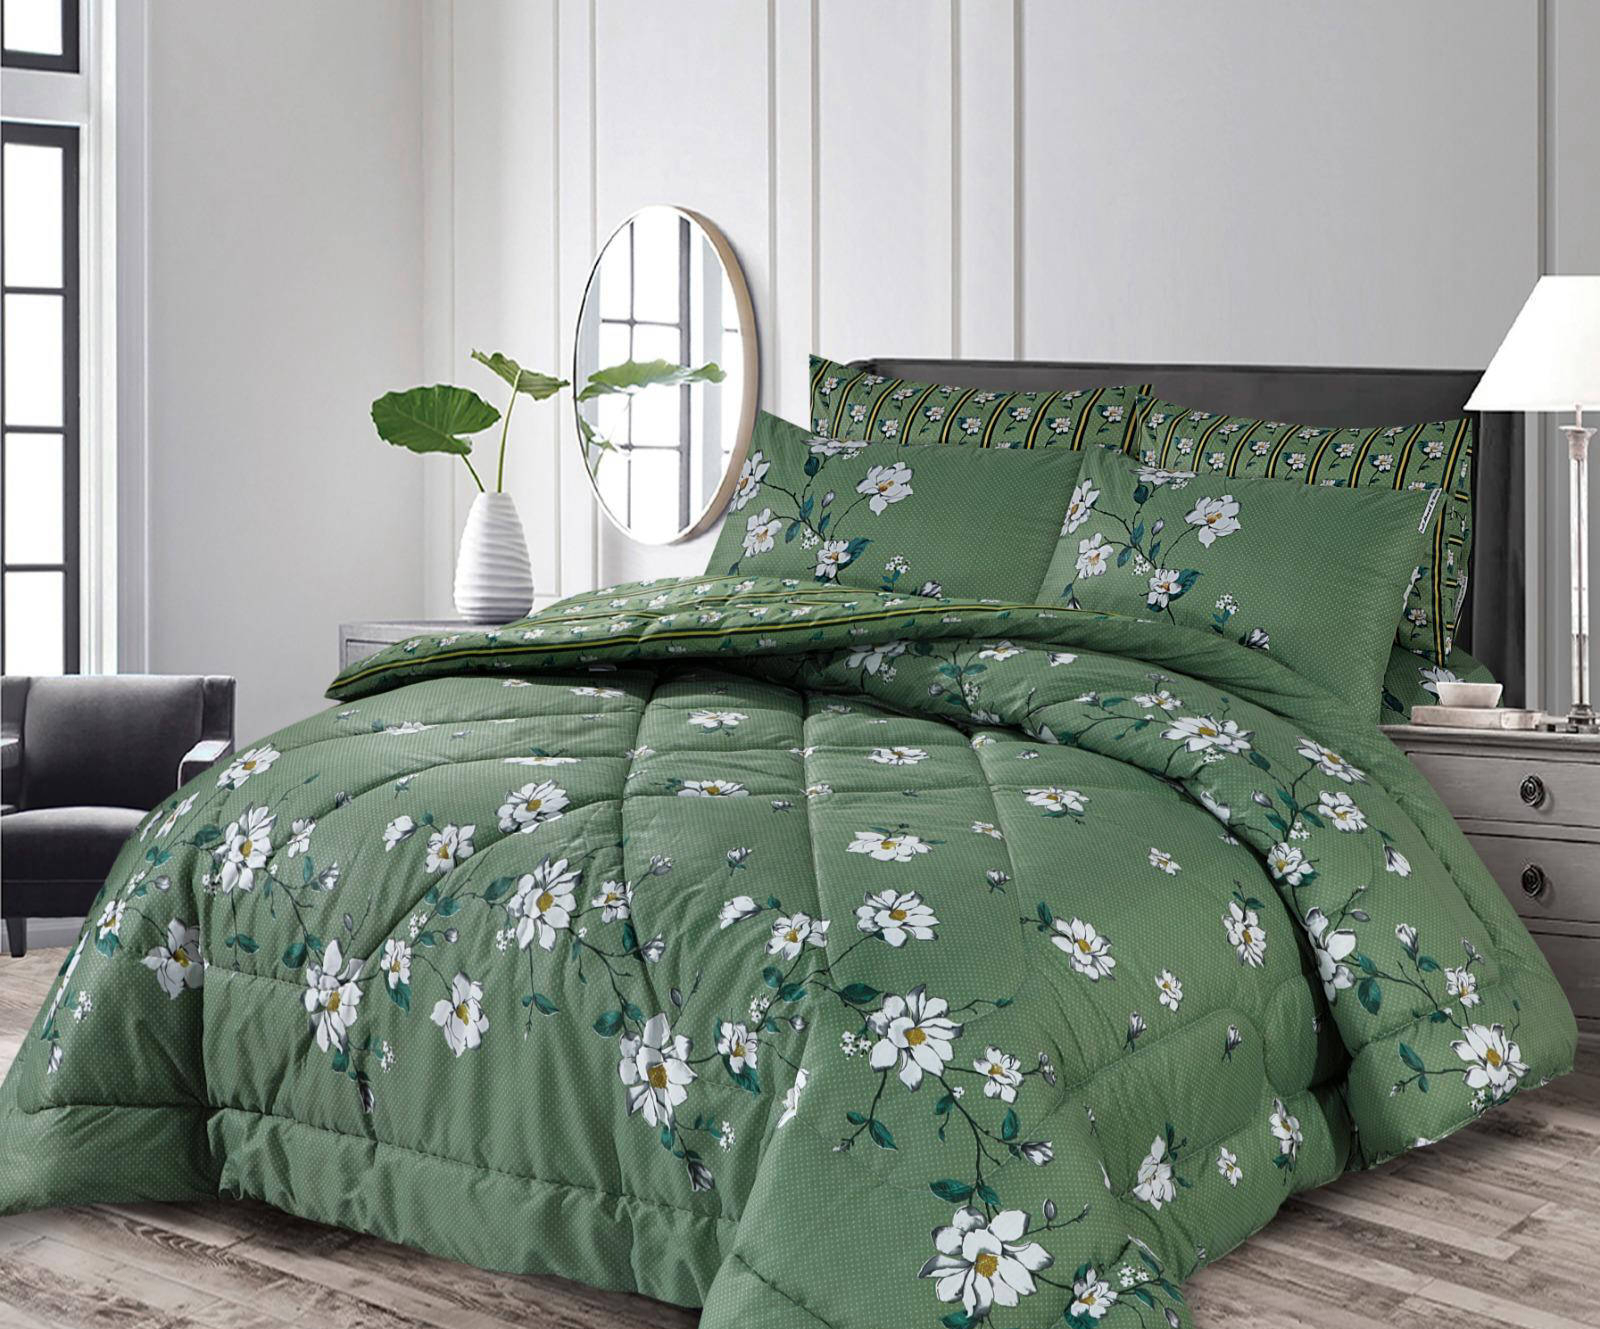 Bedsheet Set with Comforter - Green